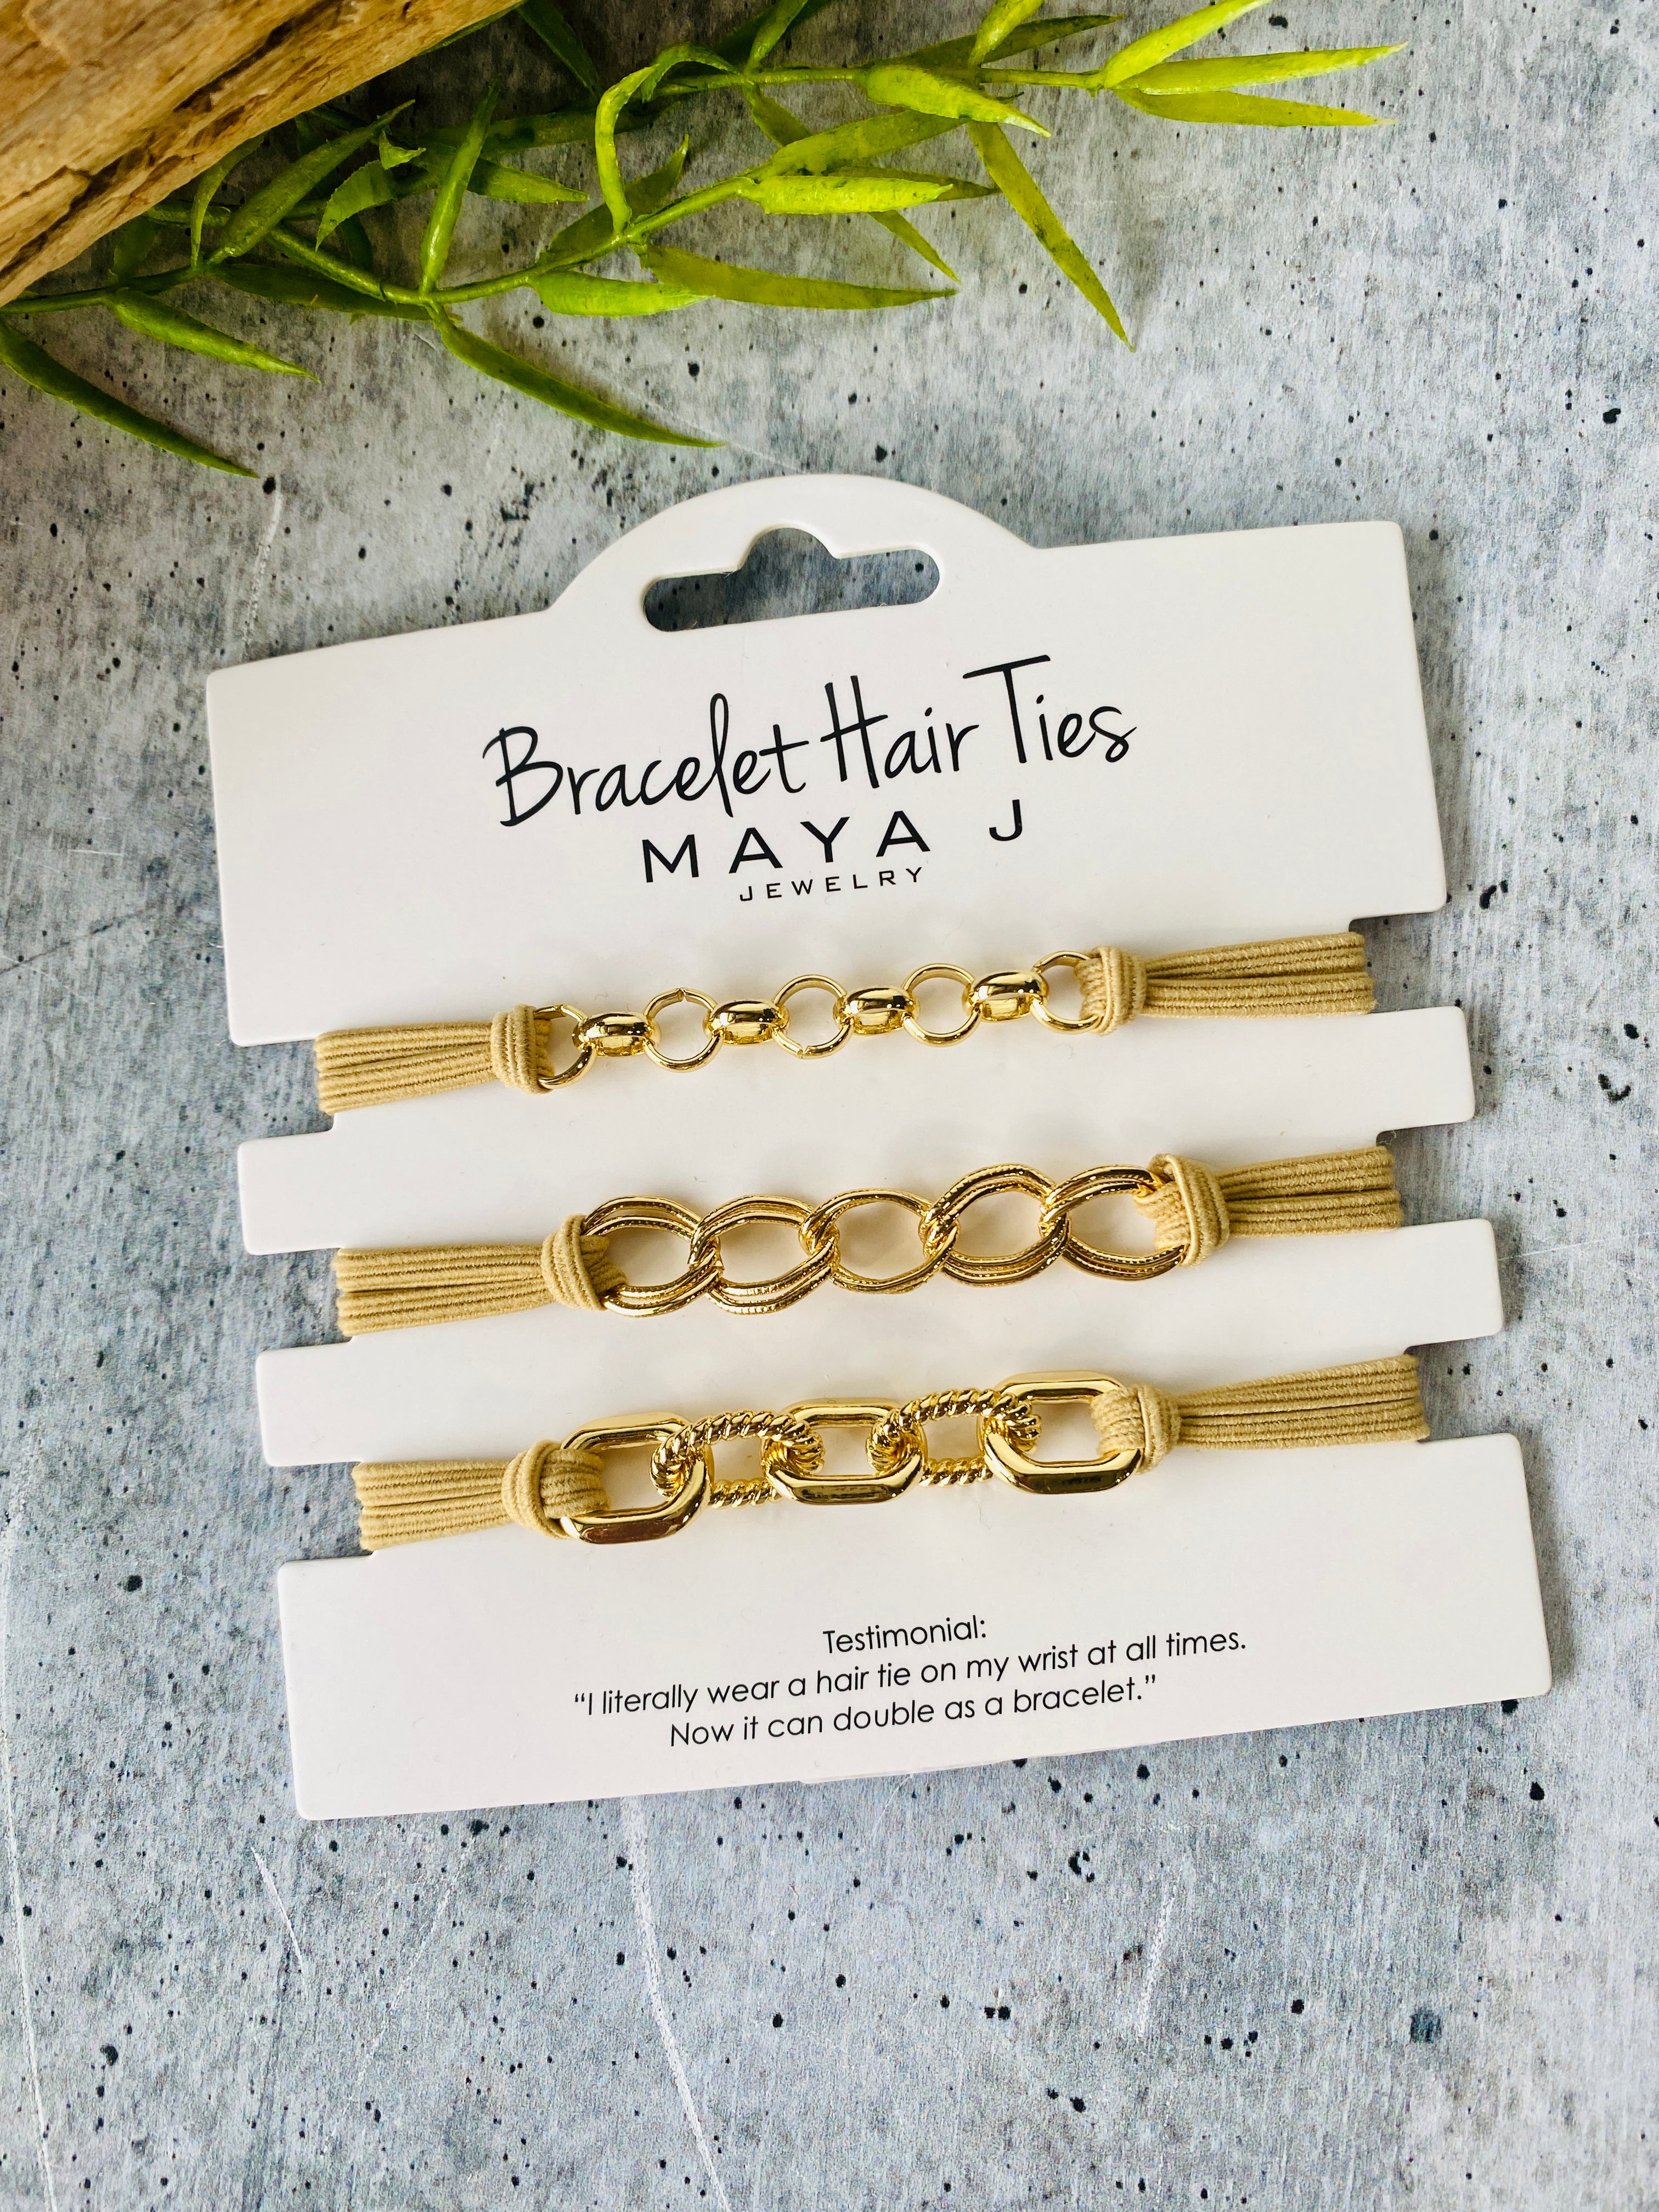 Maya Bracelet Hair Ties